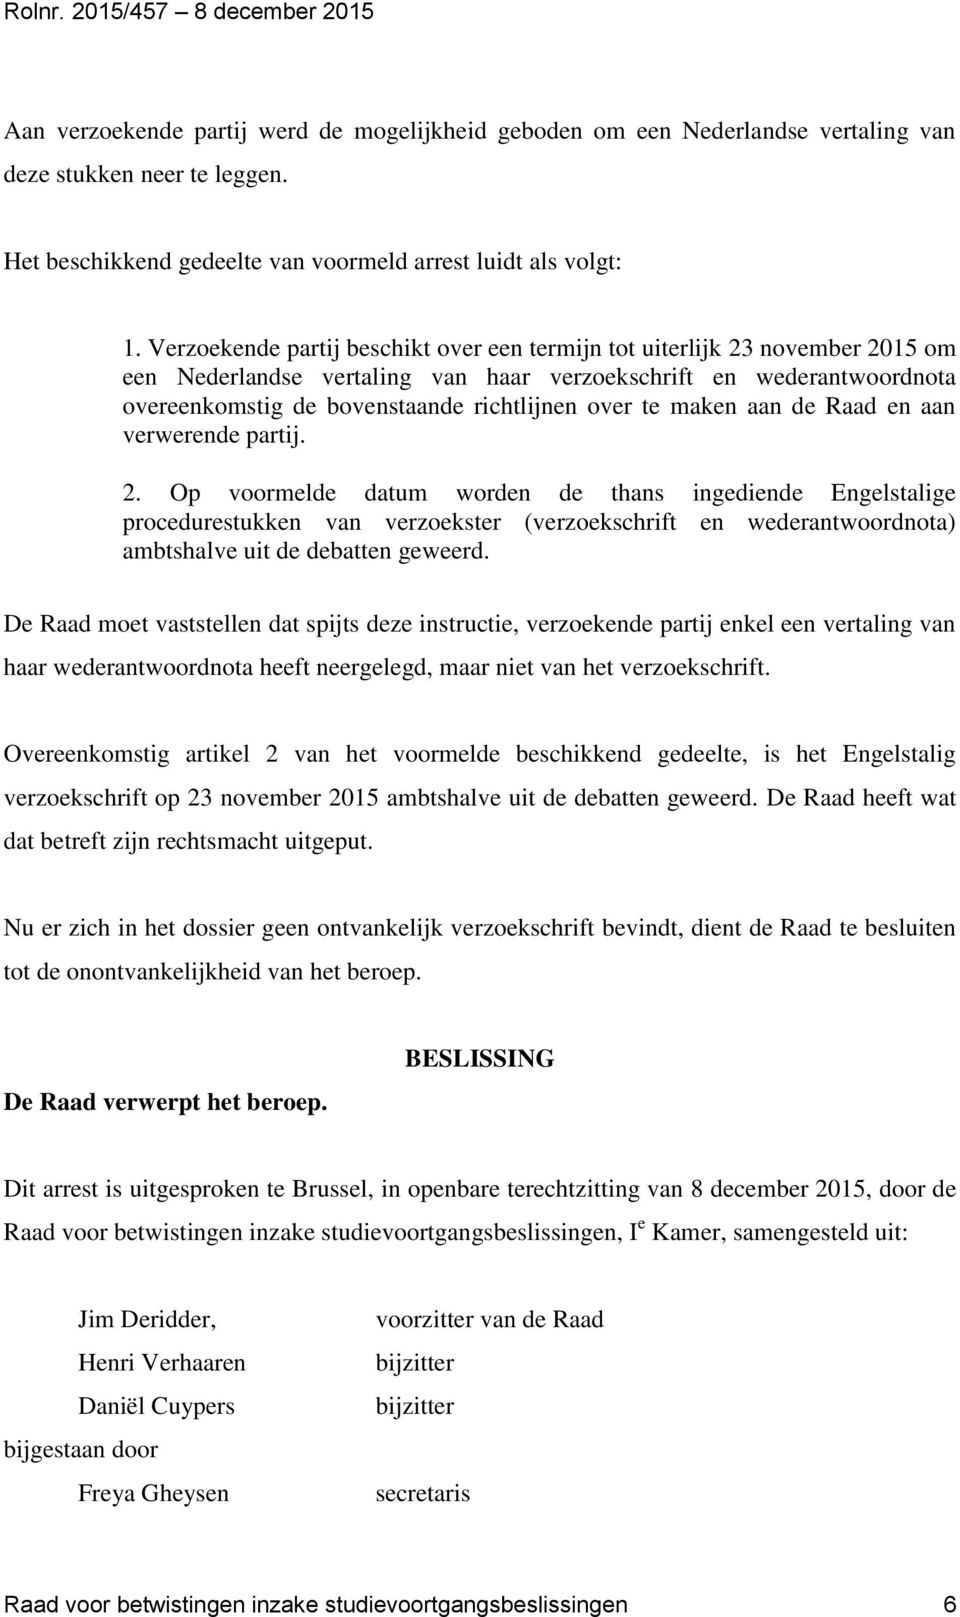 Verzoekende partij beschikt over een termijn tot uiterlijk 23 november 2015 om een Nederlandse vertaling van haar verzoekschrift en wederantwoordnota overeenkomstig de bovenstaande richtlijnen over